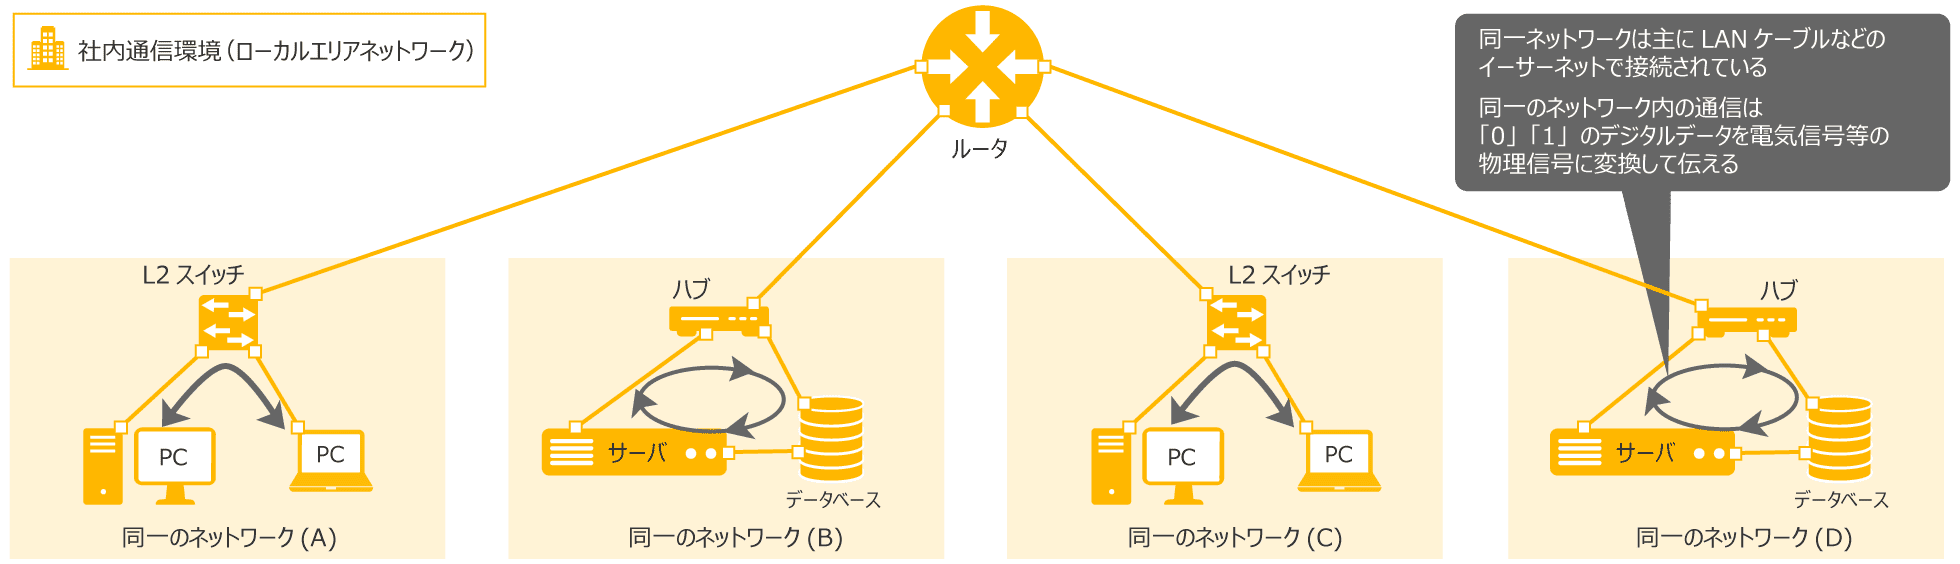 ネットワークインターフェイス層（1層）図解